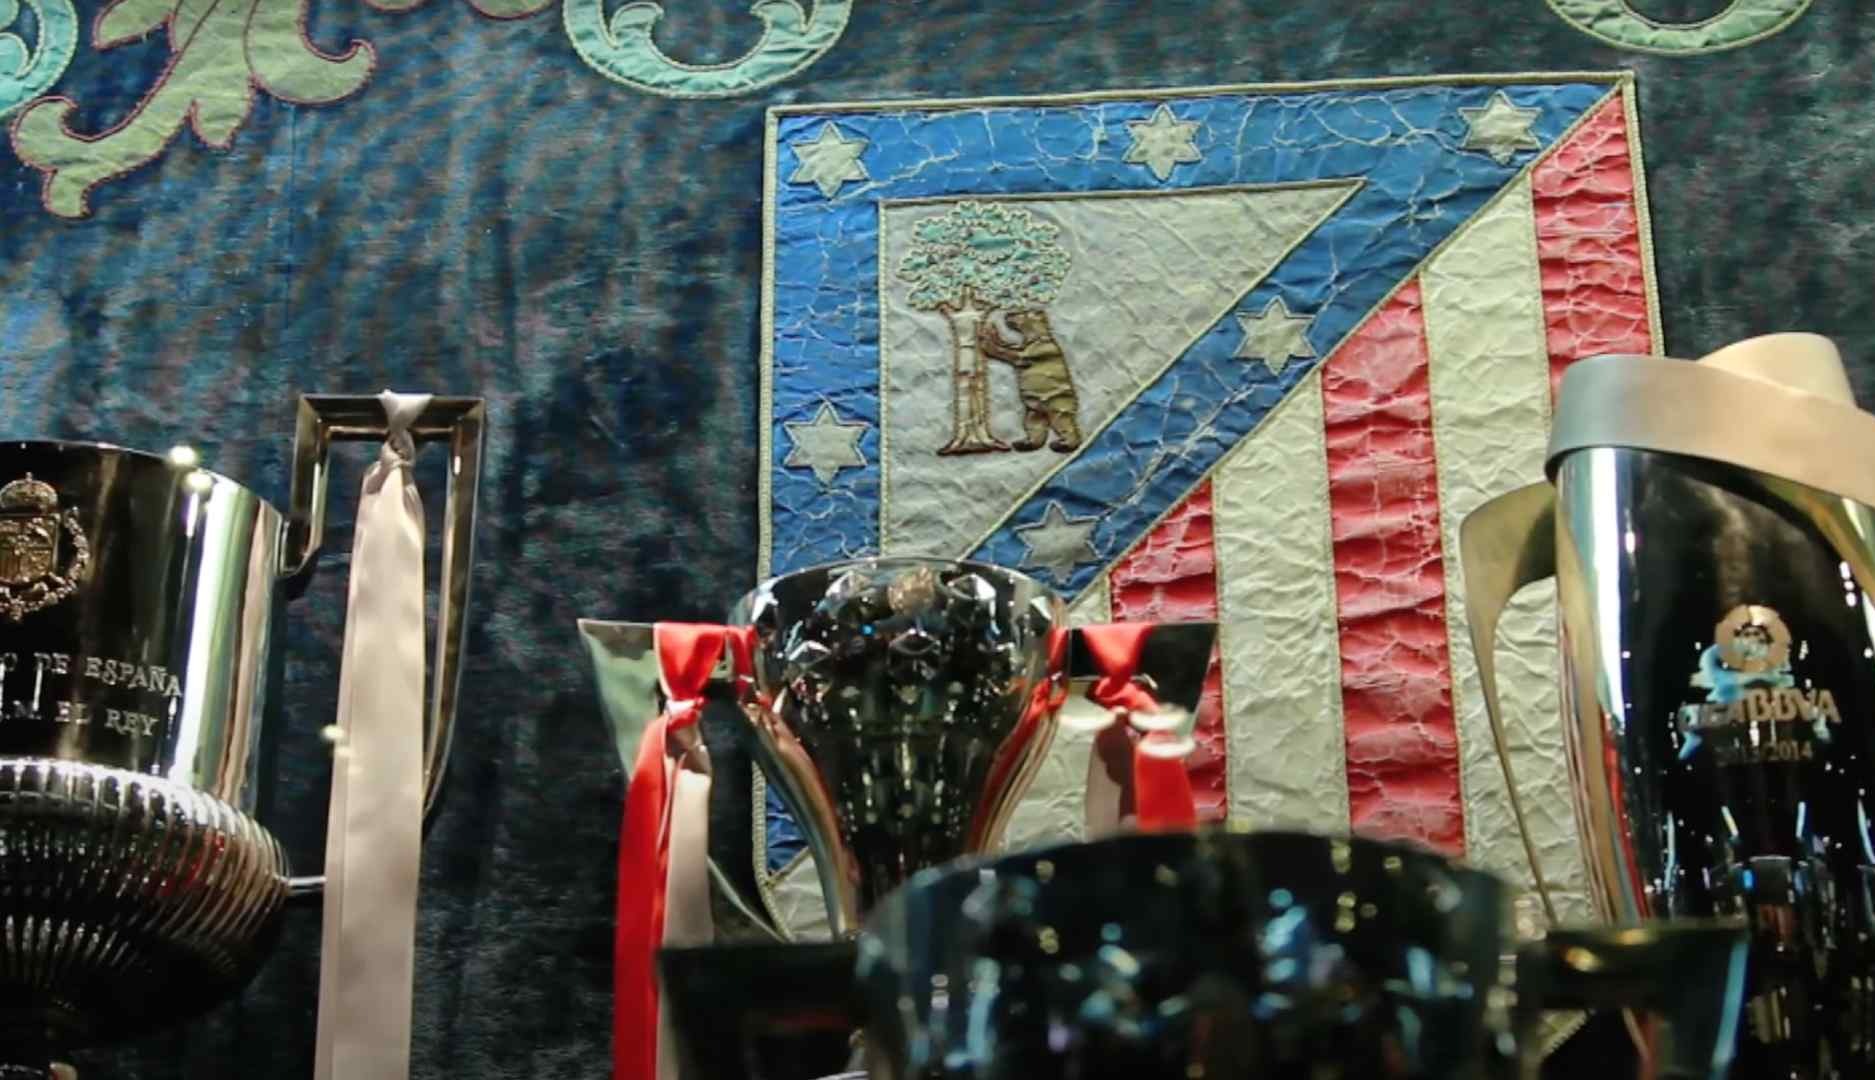 El Atlético de Madrid podría recuperar su clásico escudo, a voluntad de los socios y aficionados